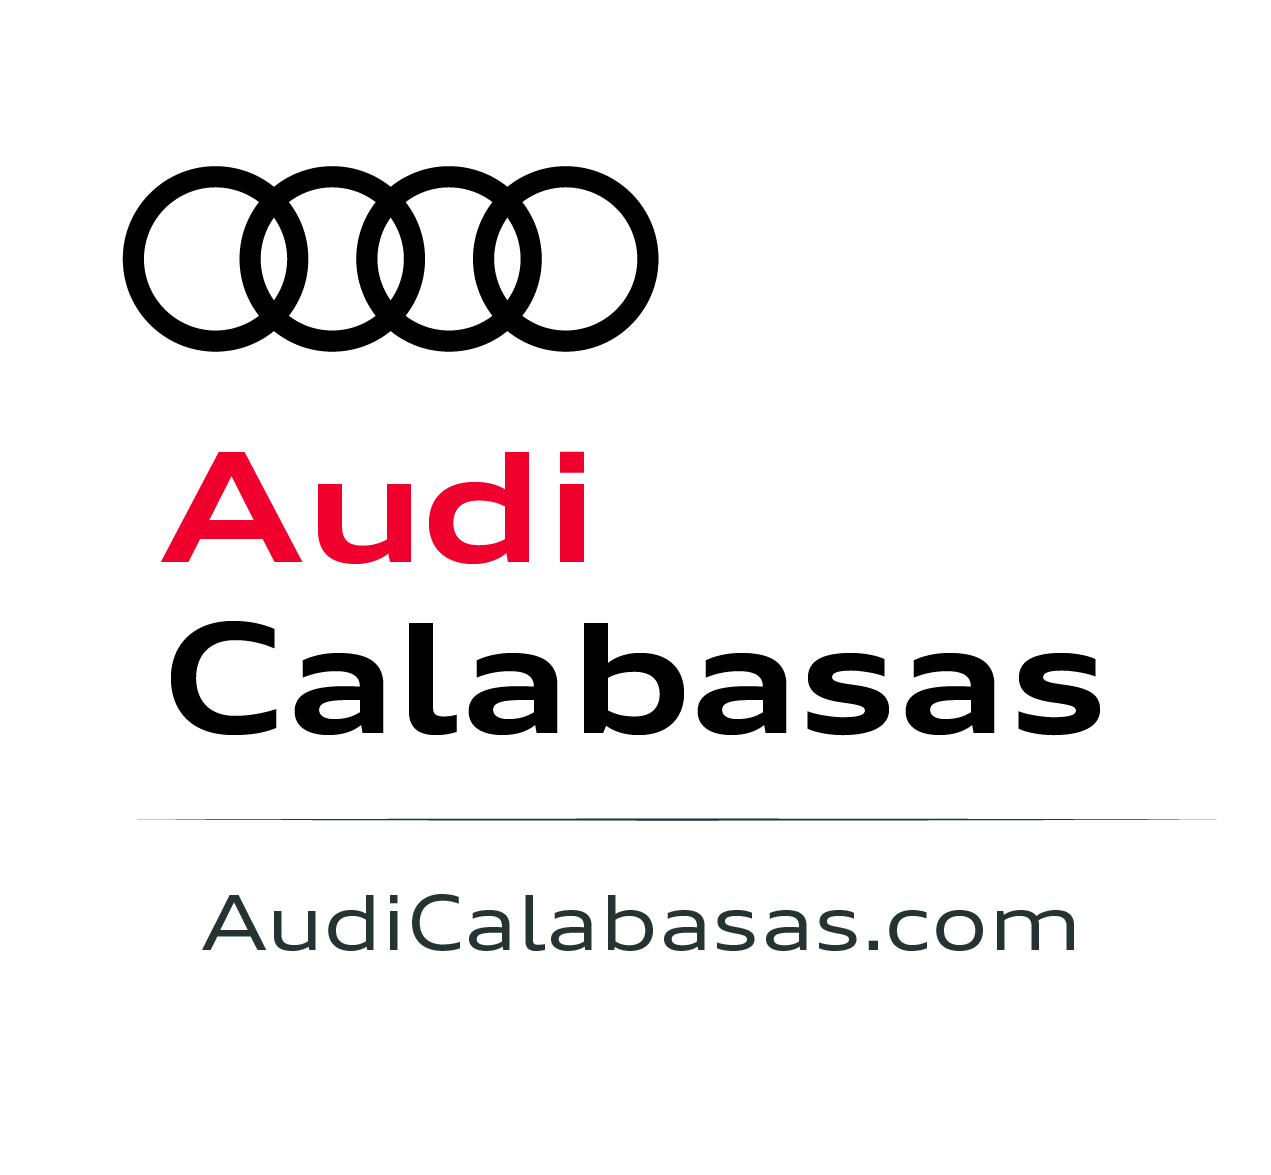 Audi Calabasas